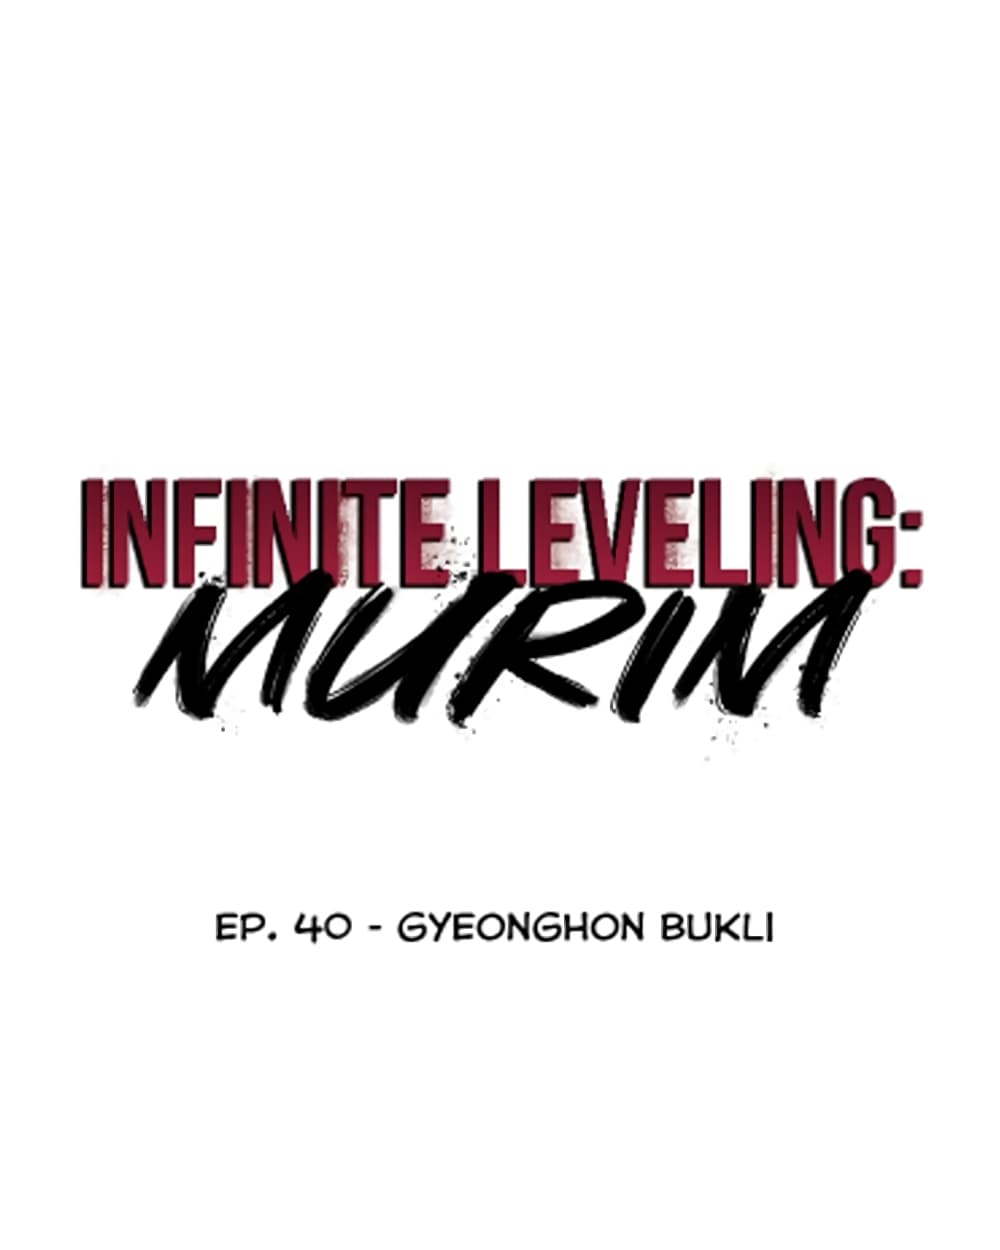 Infinite Level Up in Murim 40 06